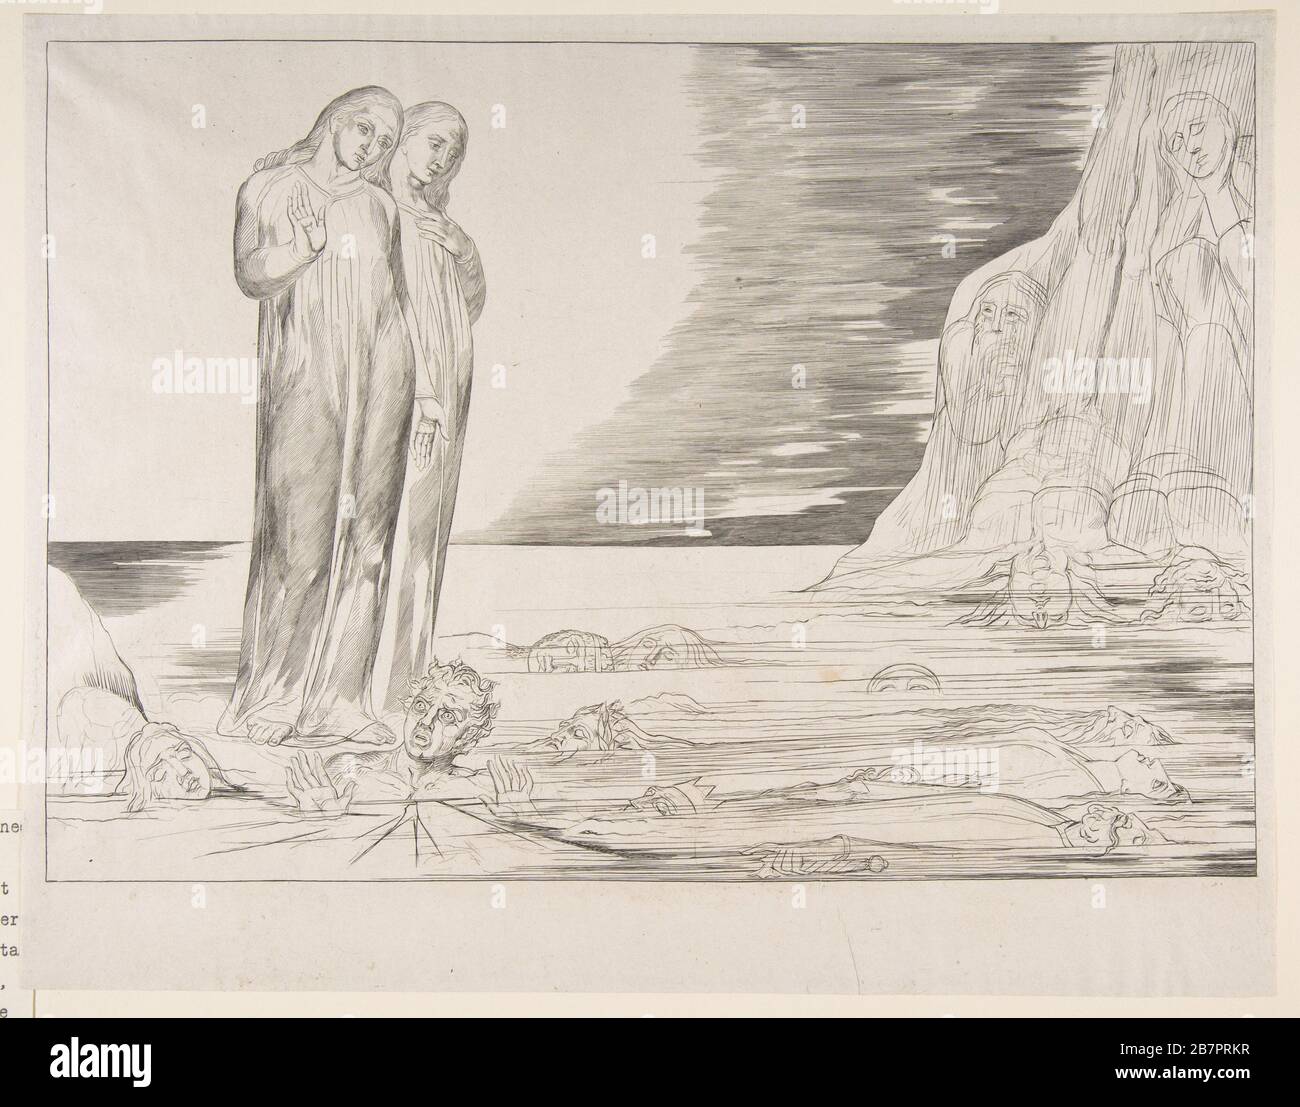 Il Circolo dei Traditori: Il piede di Dante colpisce la bocca degli Abbate, dall'Inferno di Dante, canto XXXII, ca. 1825-27. Foto Stock